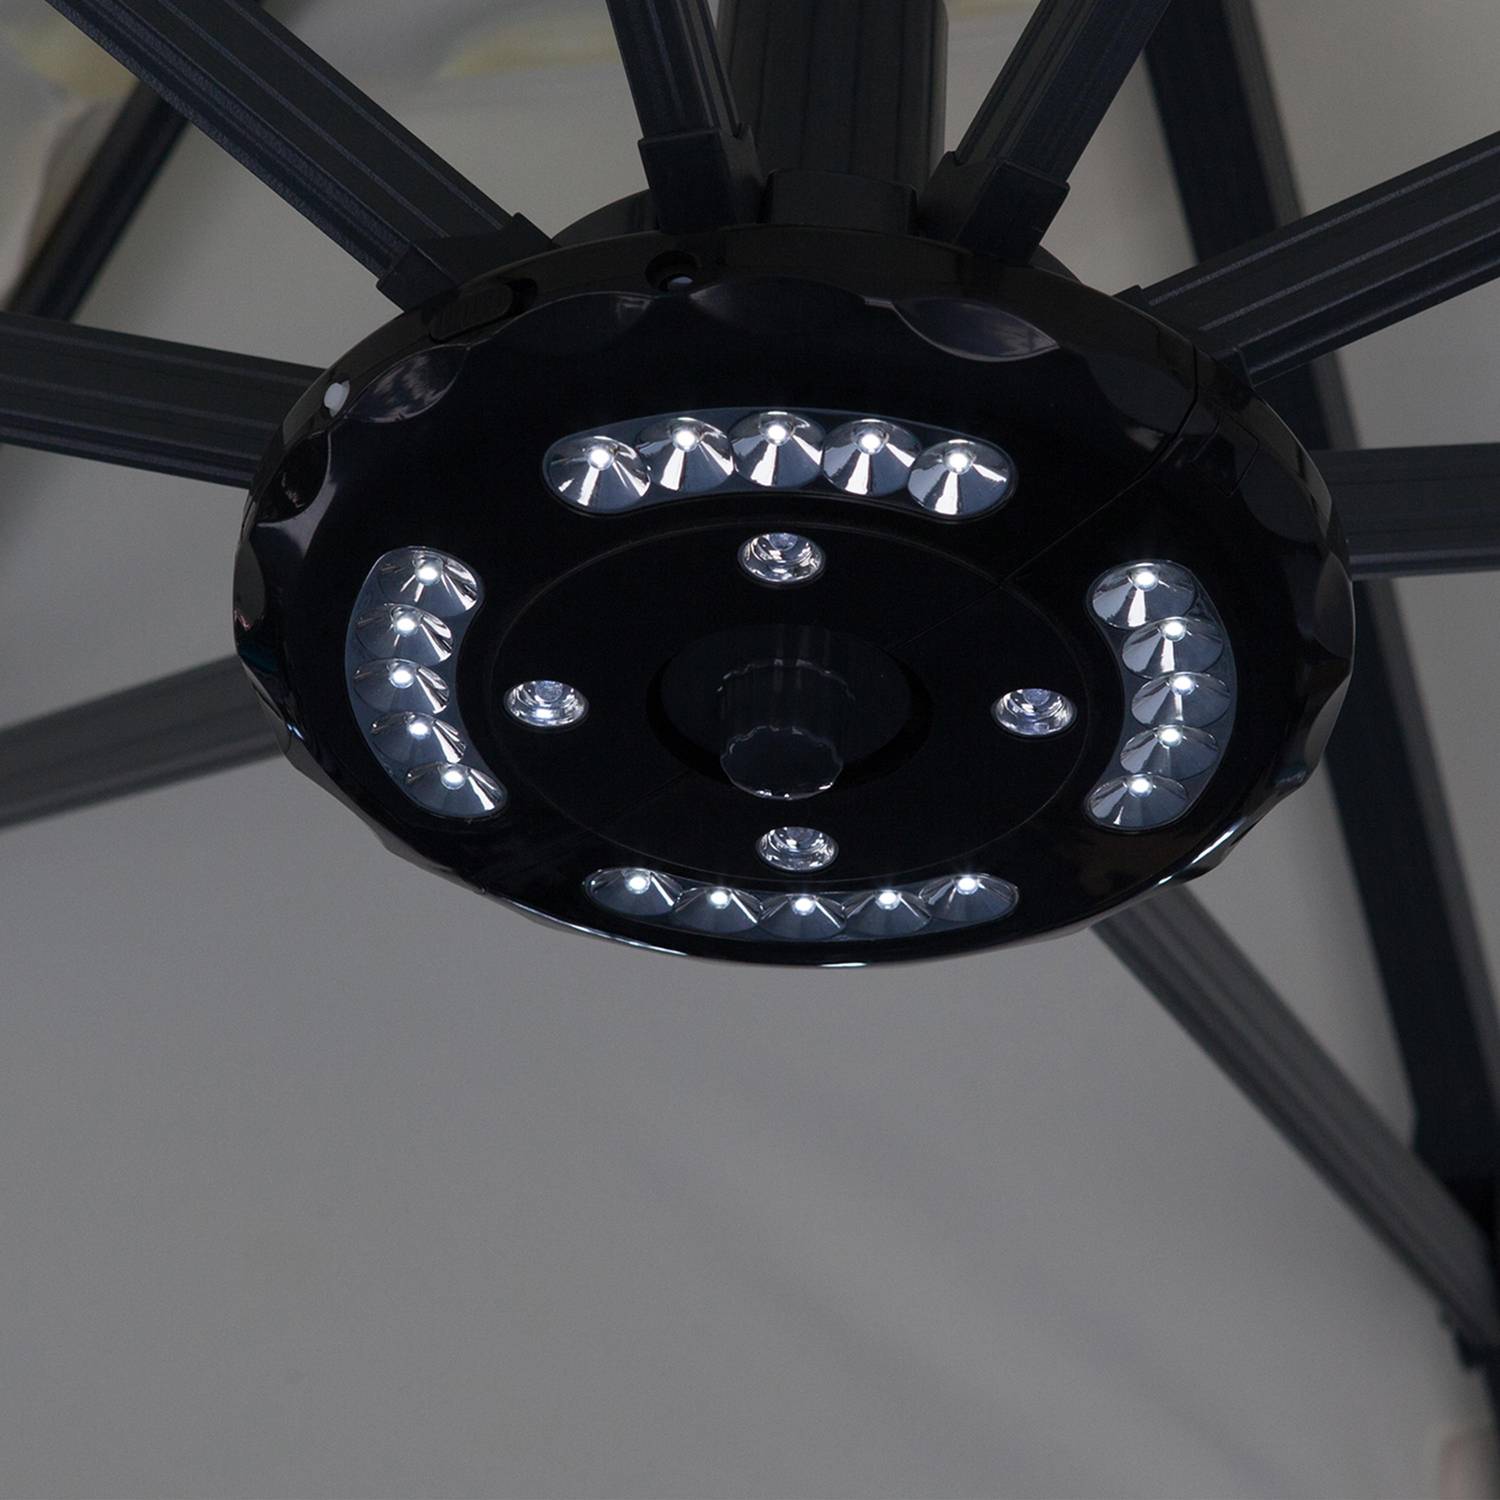 LED-lamp voor parasols met een centrale of gedeporteerd mast Photo2